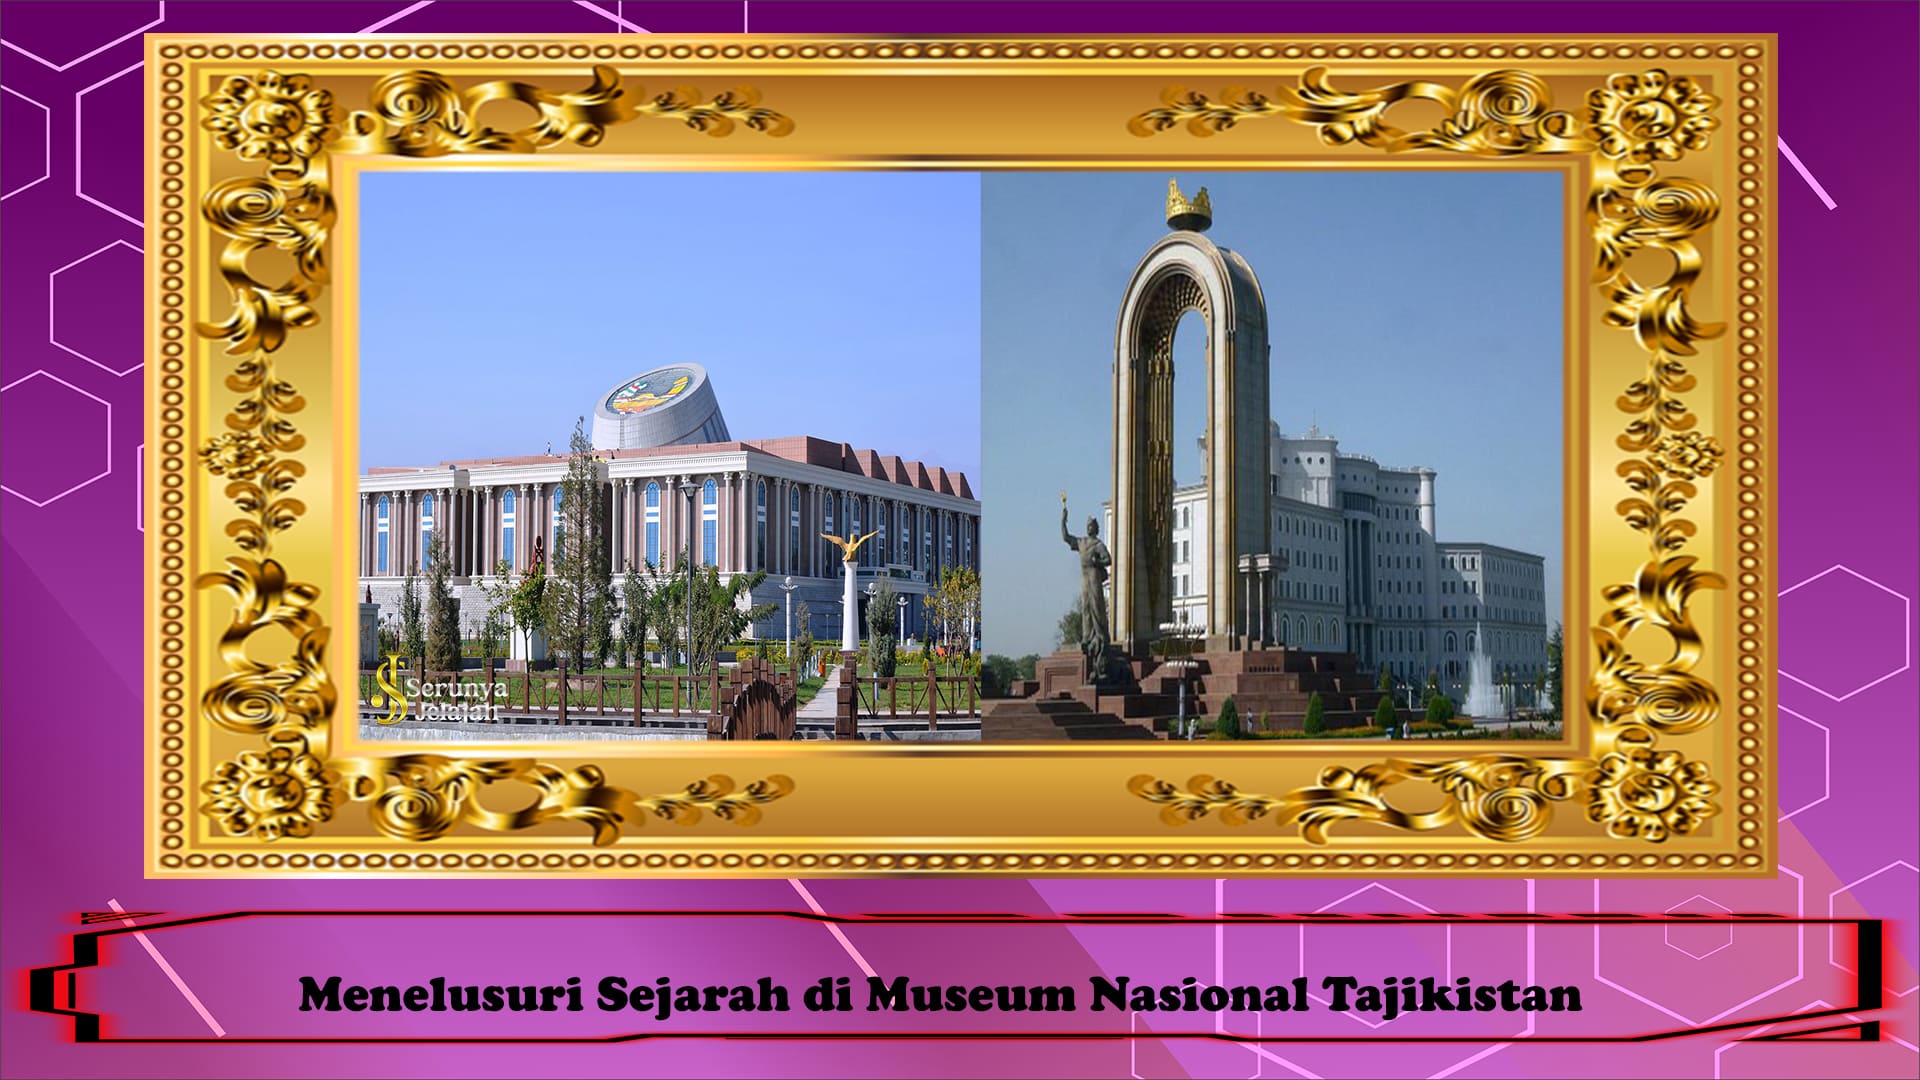 Menelusuri Sejarah di Museum Nasional Tajikistan